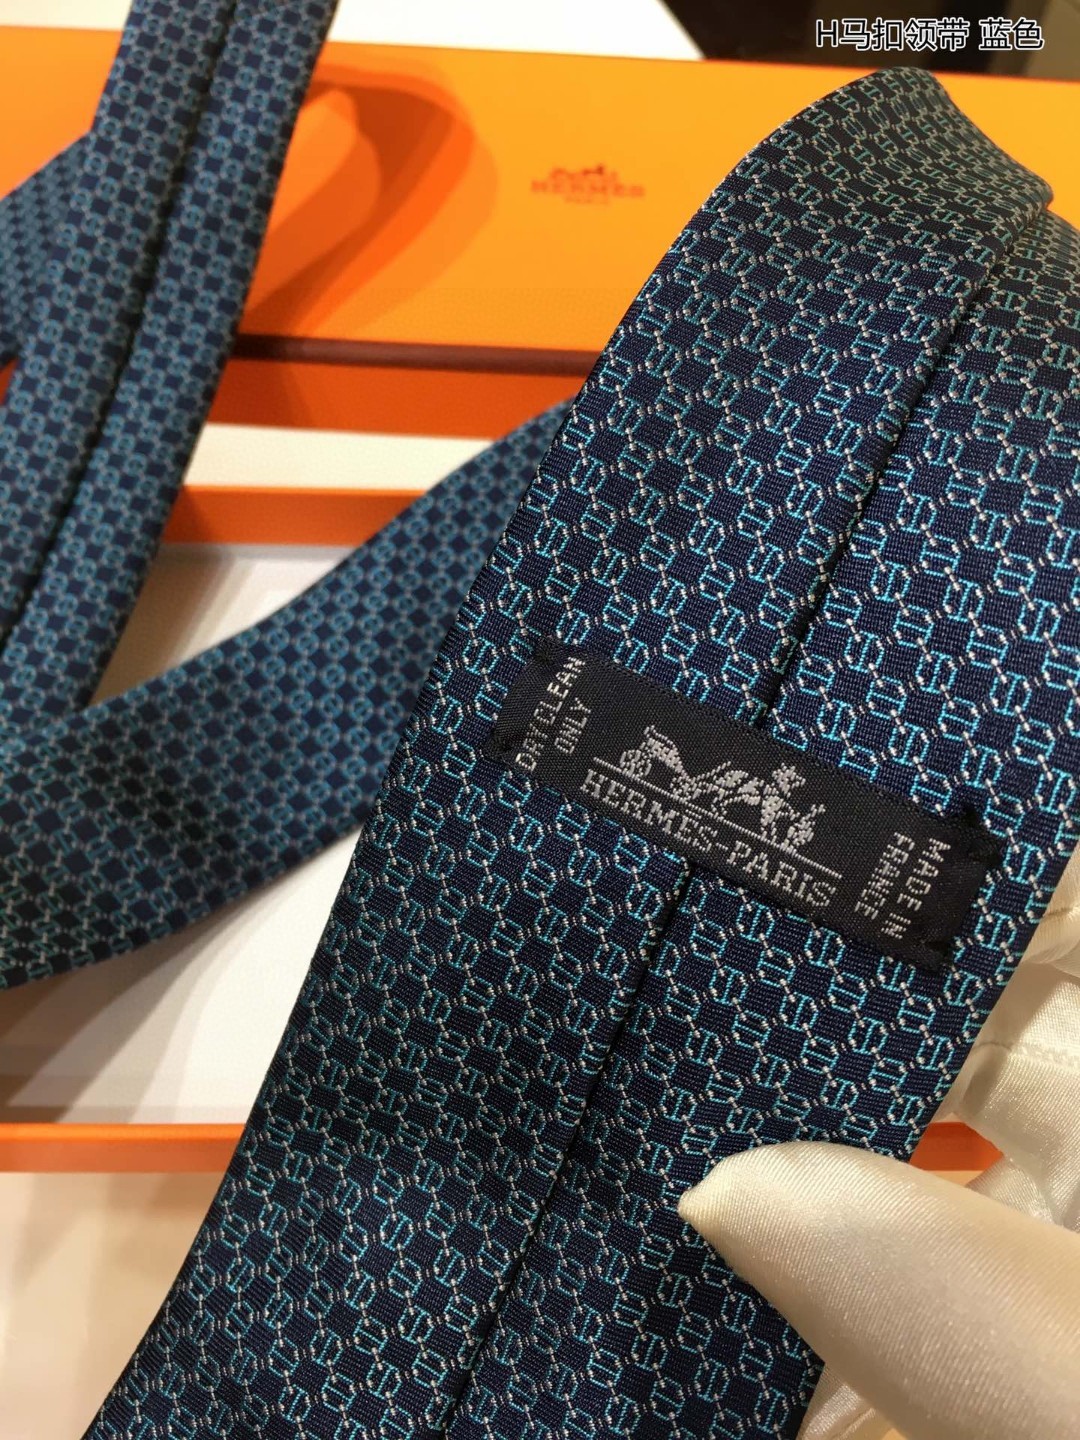 上新男士新款领带系列H马扣领带稀有H